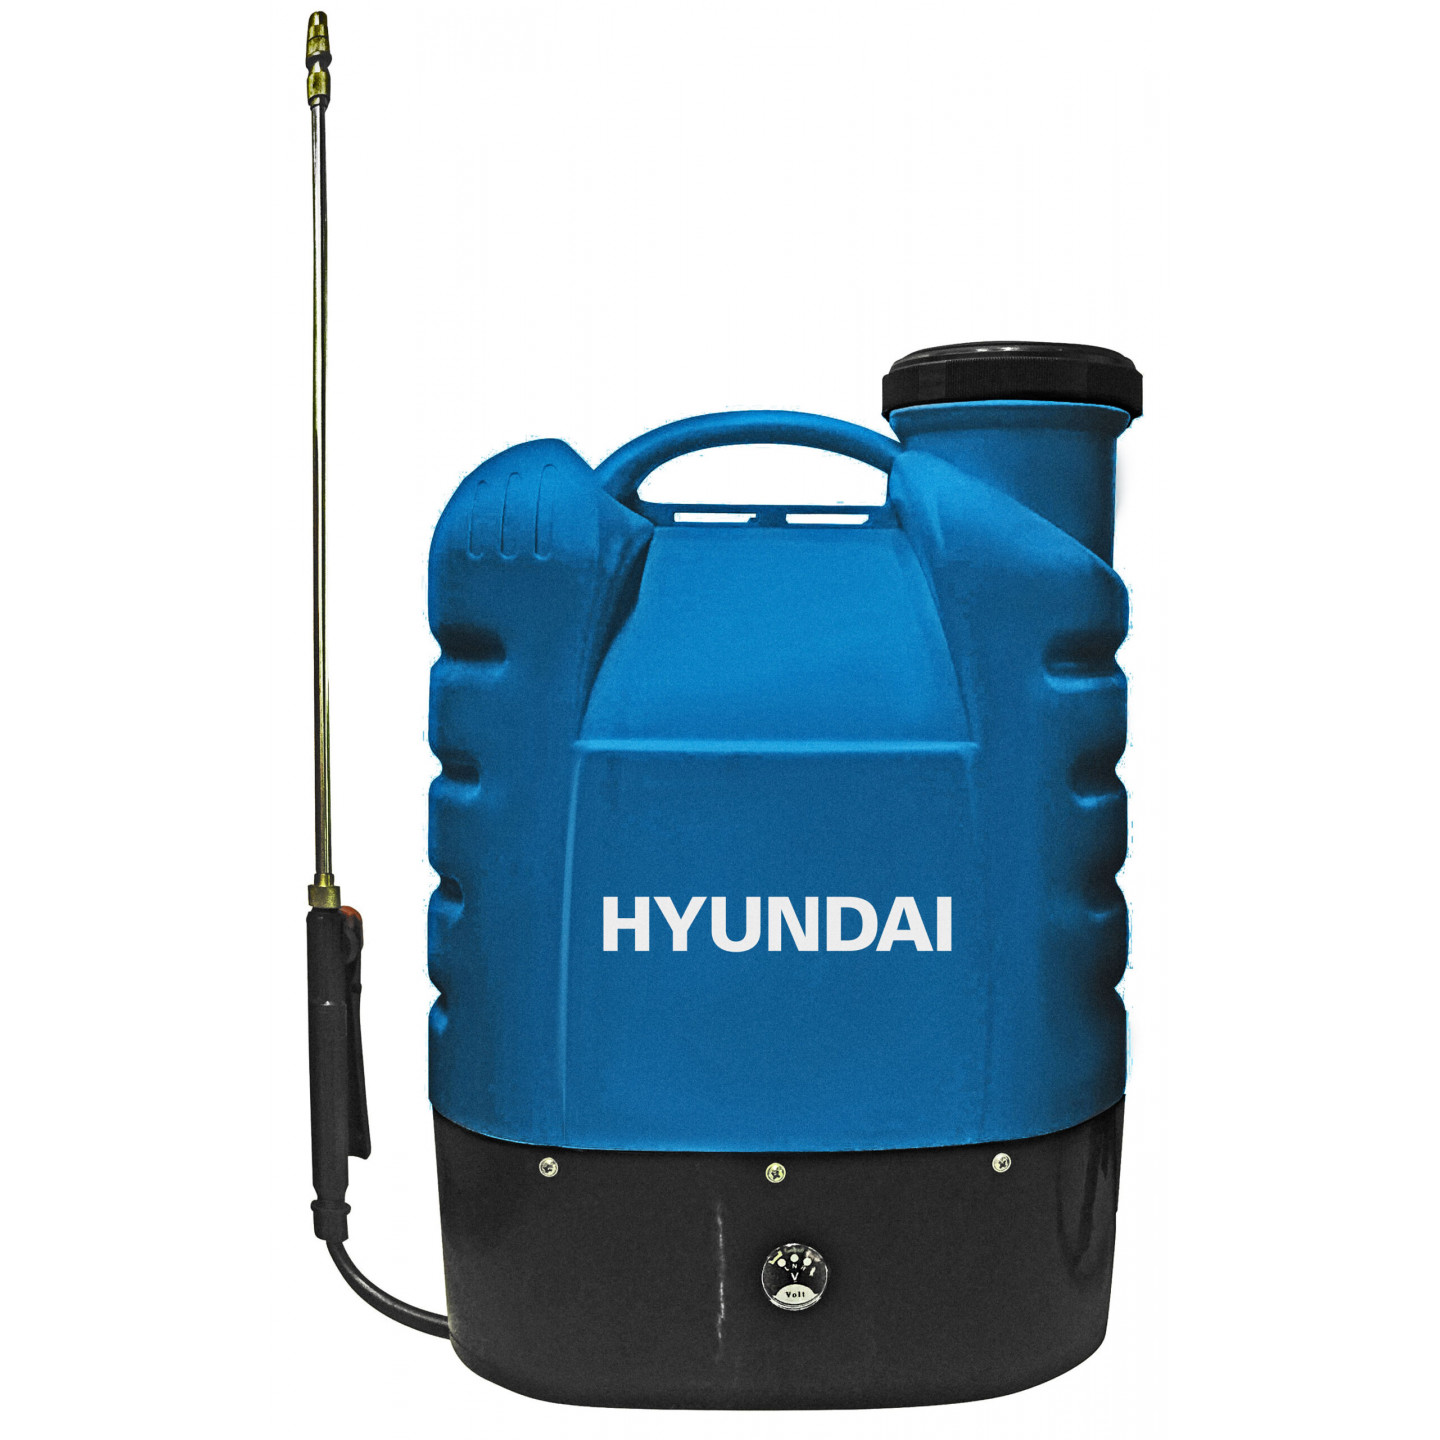 Pompa a spalla a batteria Hyundai 25920 12 V 8 Ah serbatoio 16 litri